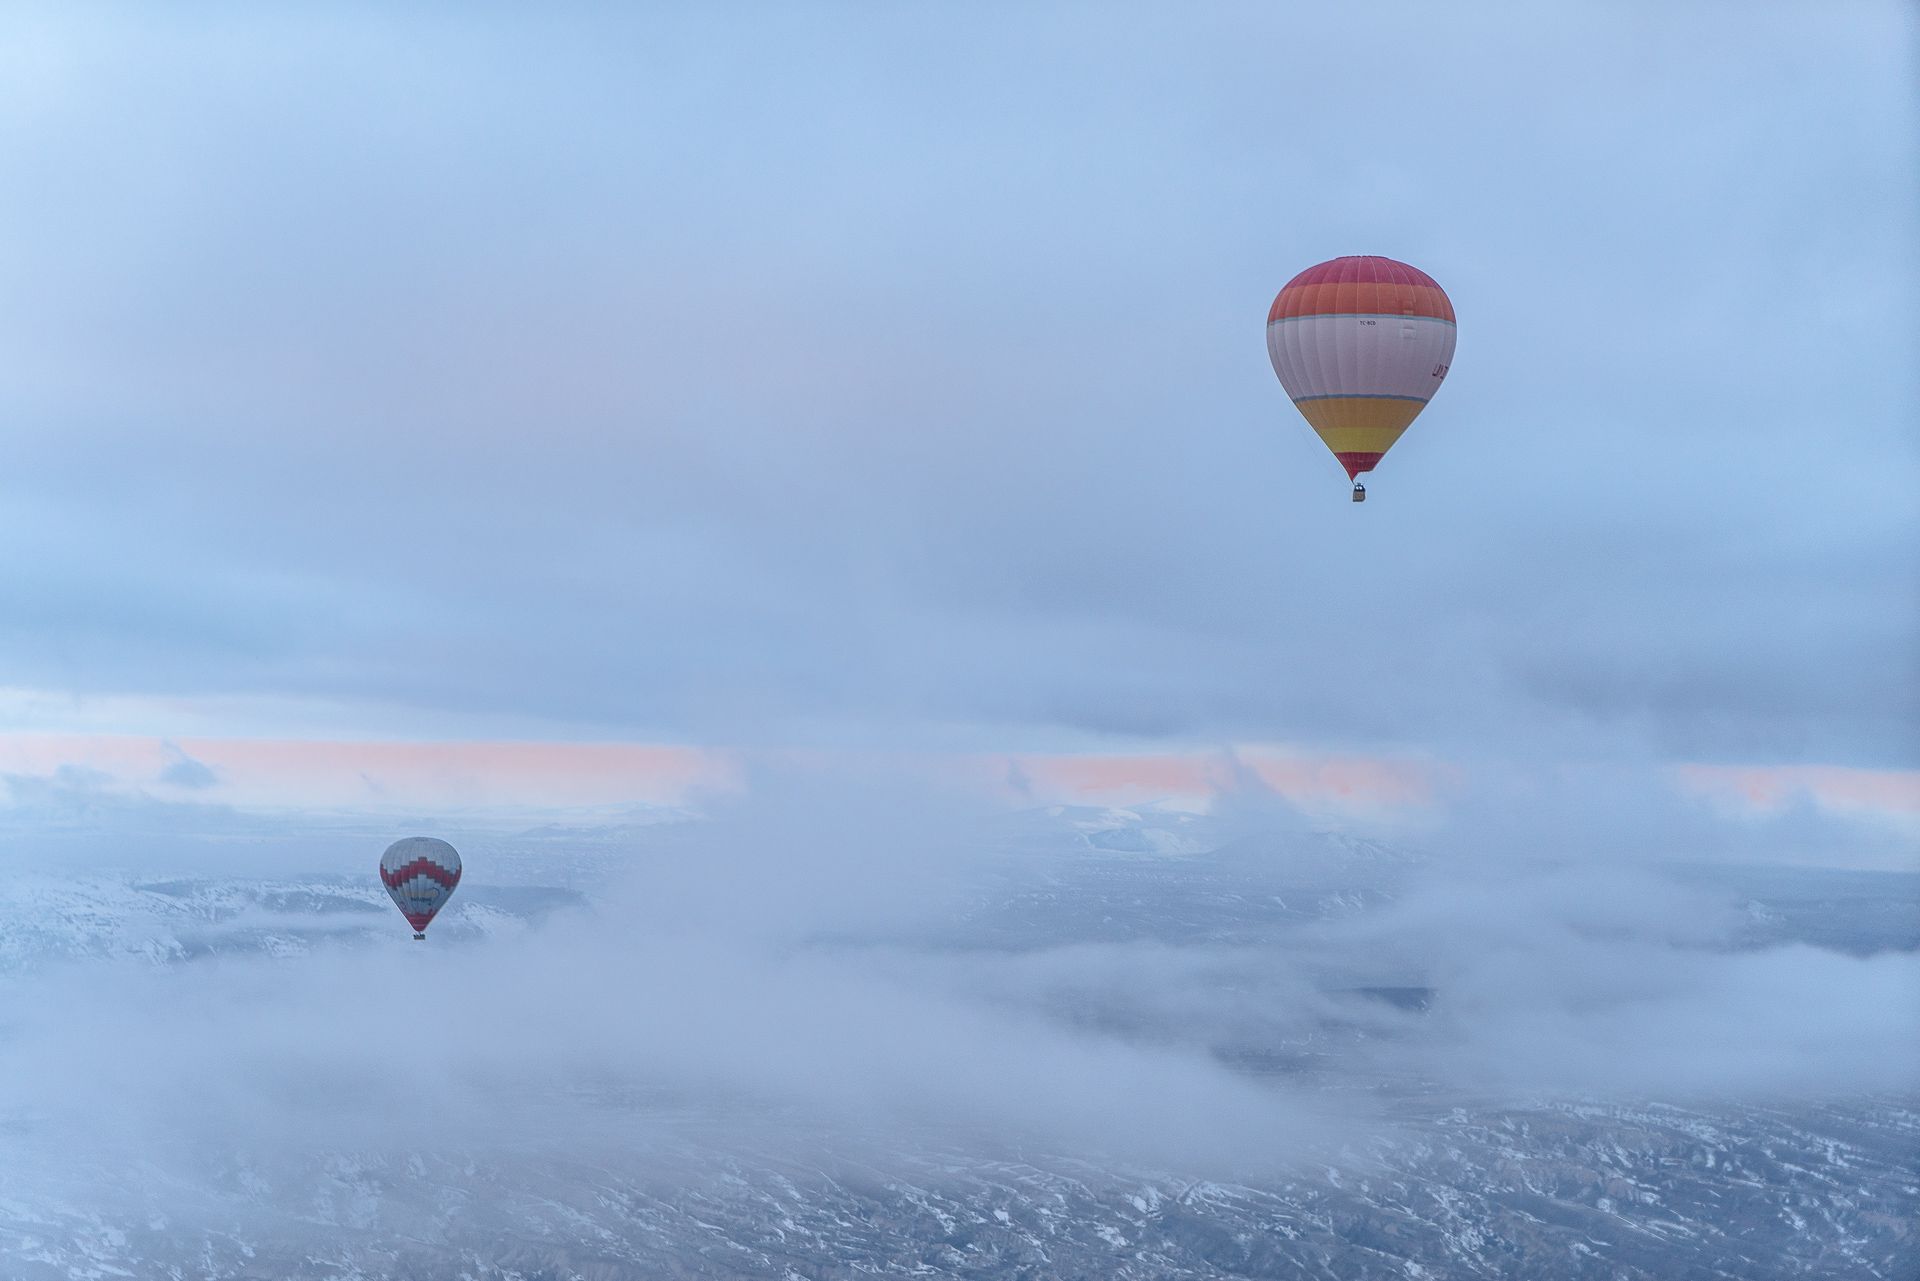 Testé par Les Voyageuses: Tour de montgolfière en Cappadoce, Turquie